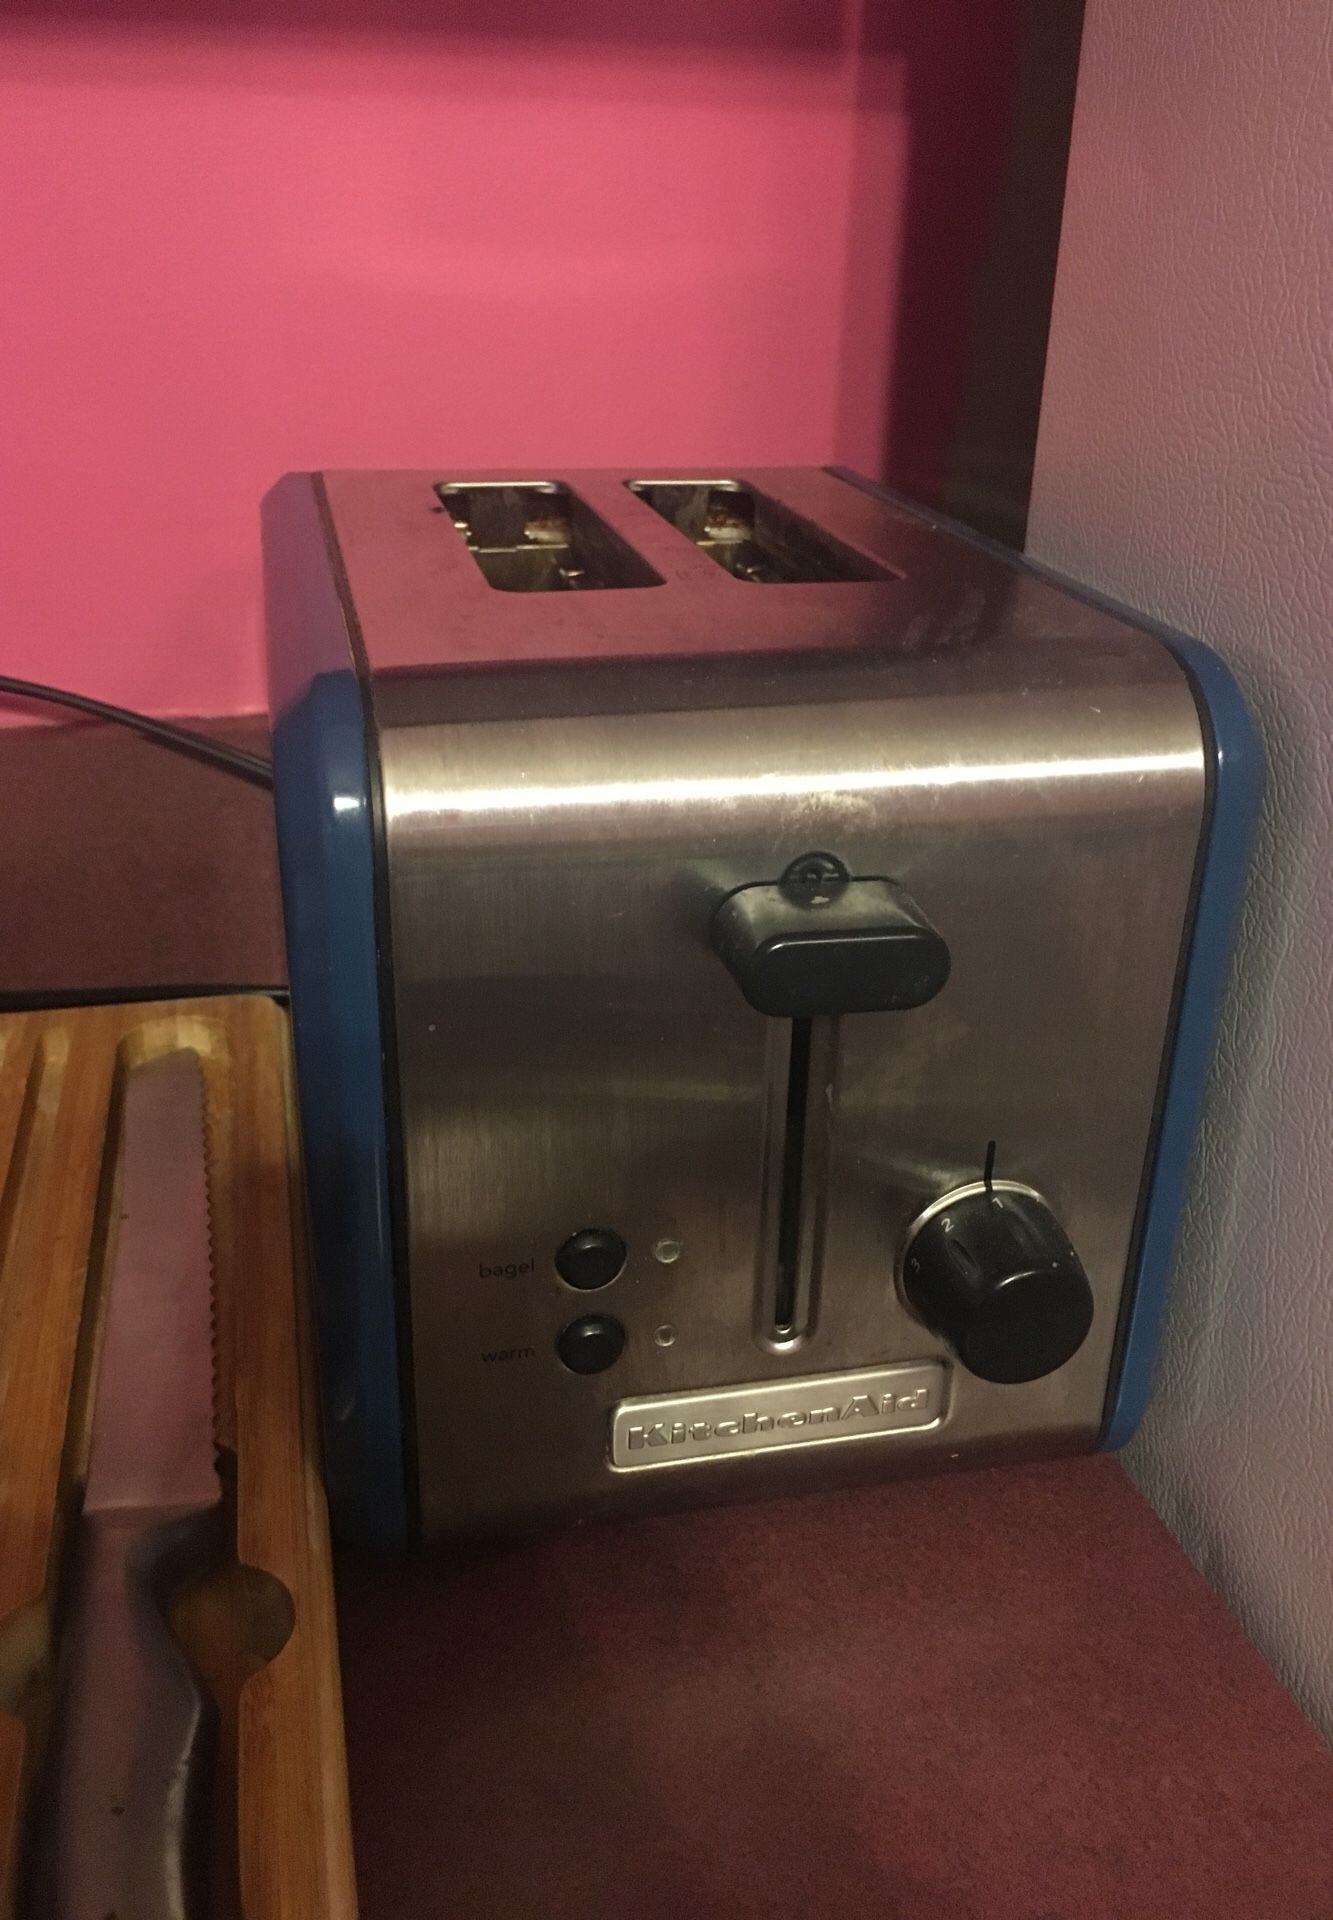 Kitchen Aid toaster